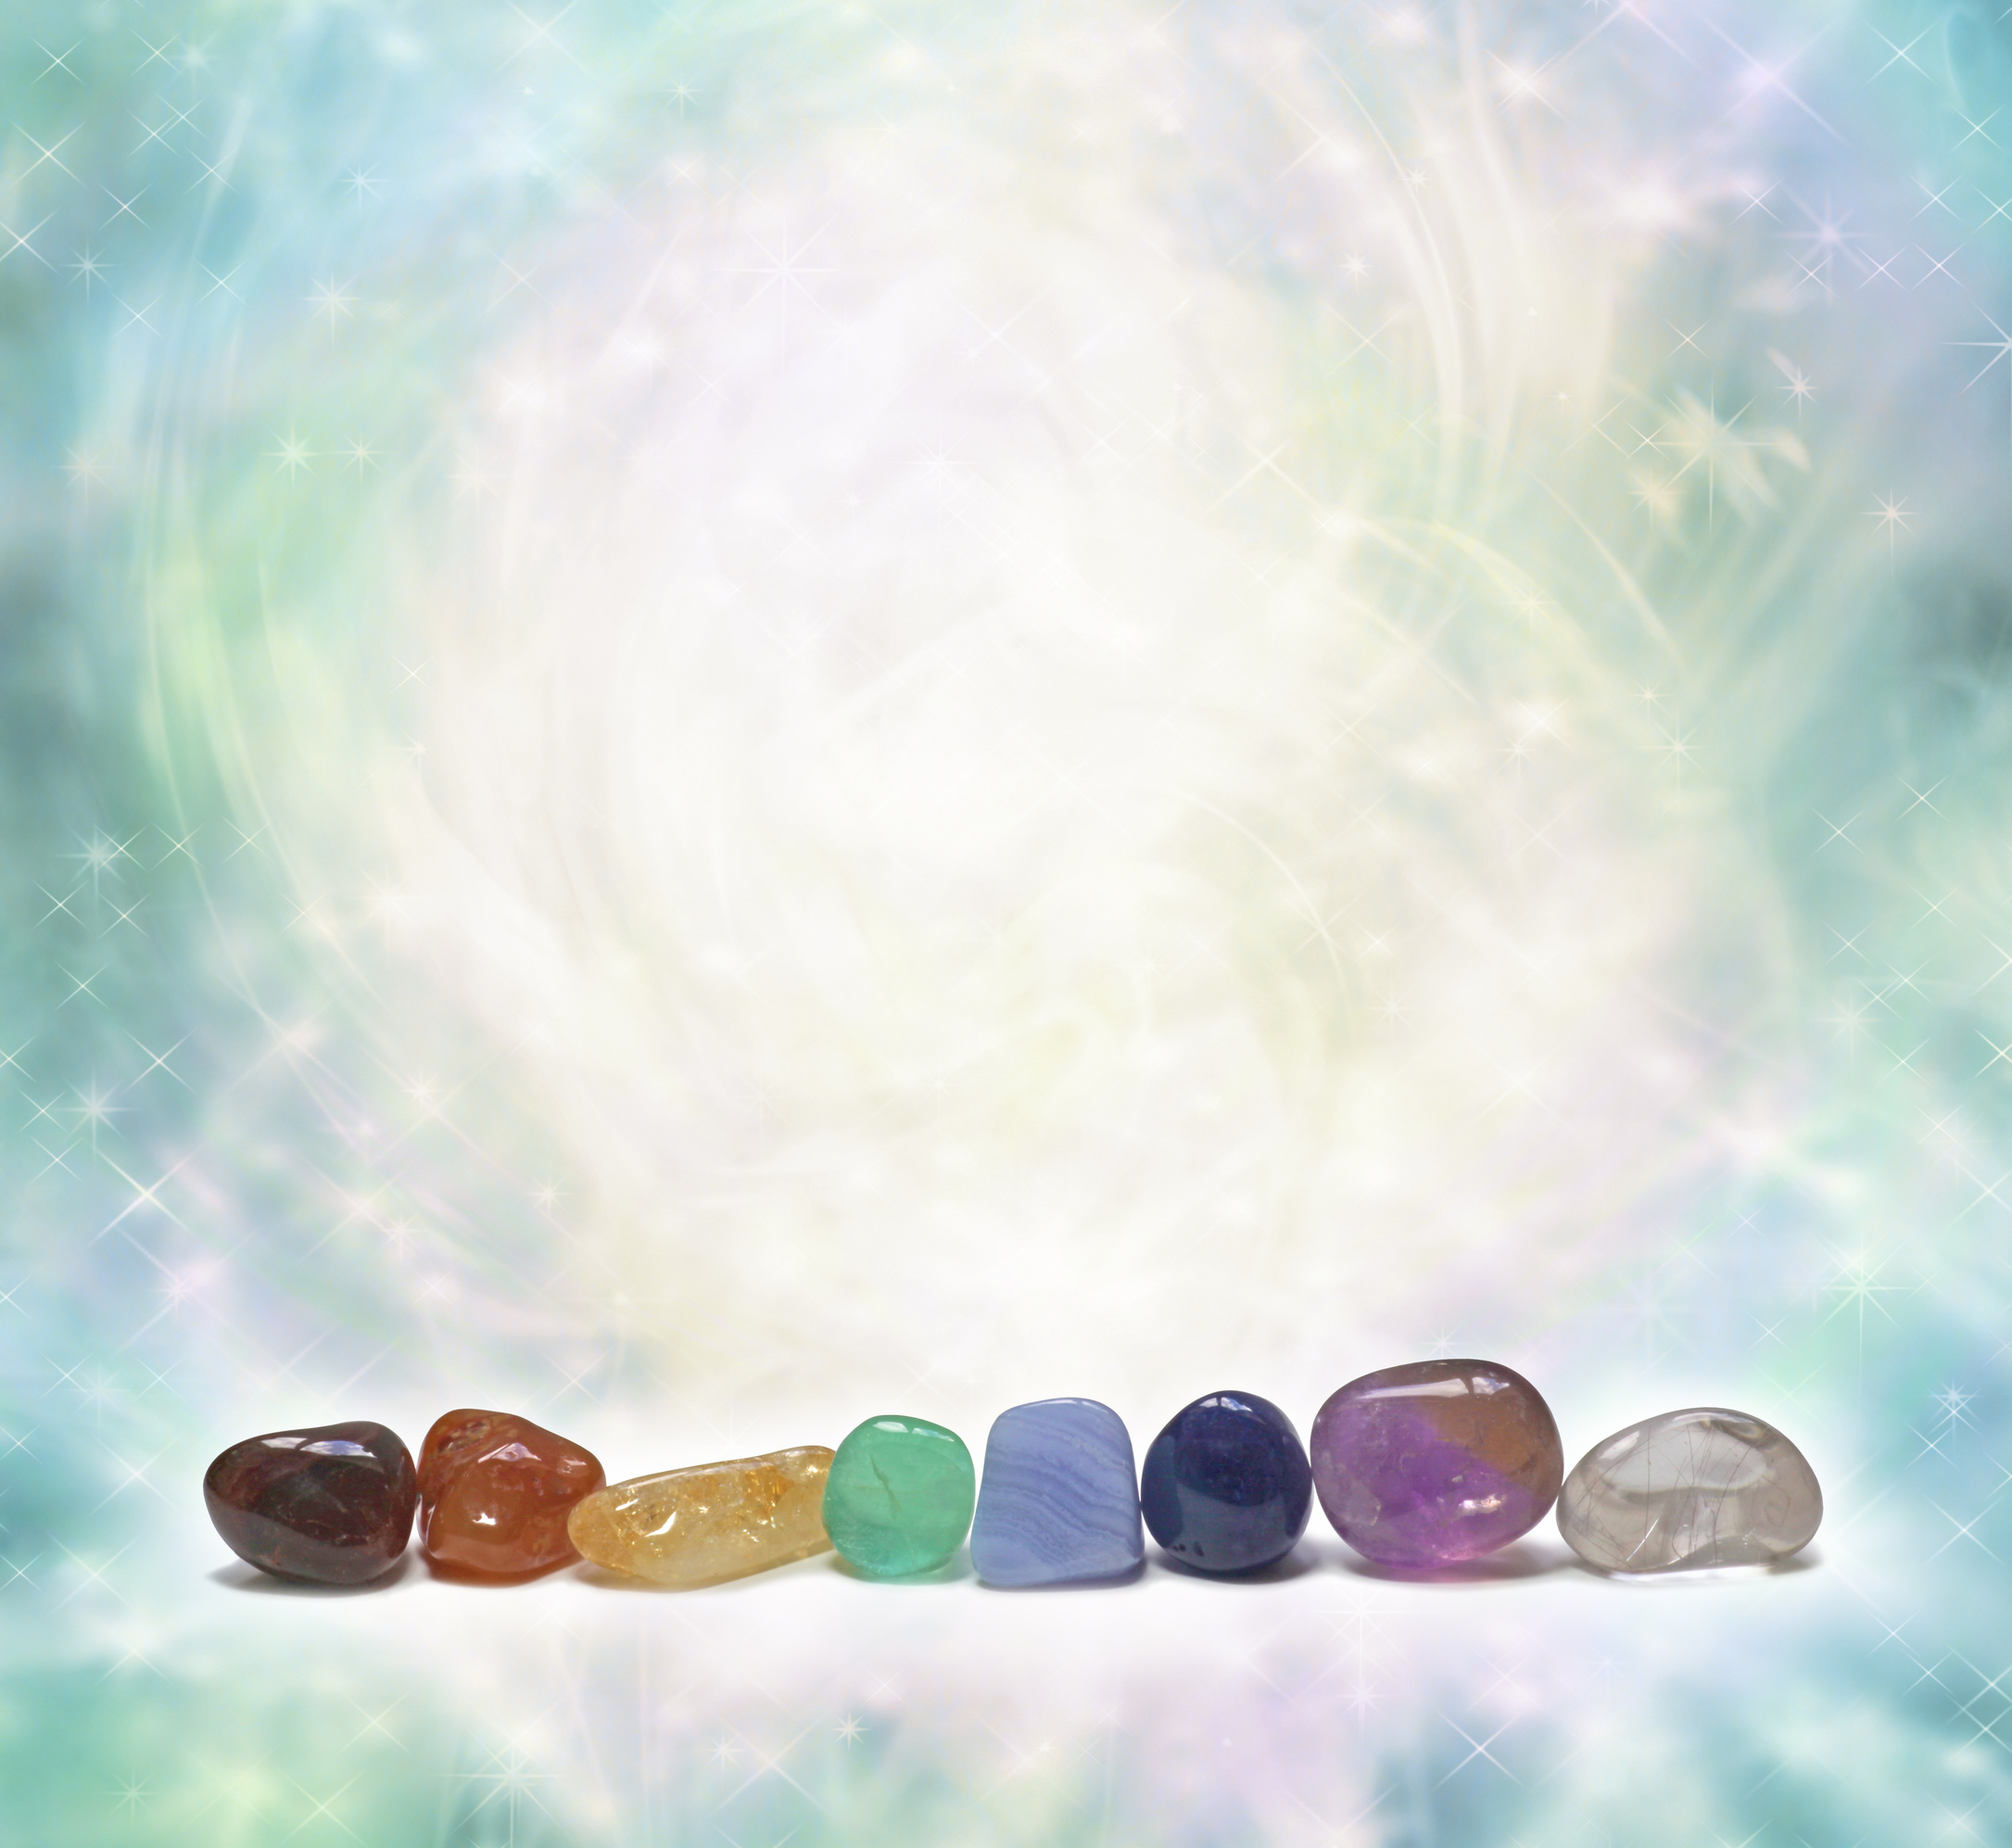 Chakra Crystals emitting beautiful energy